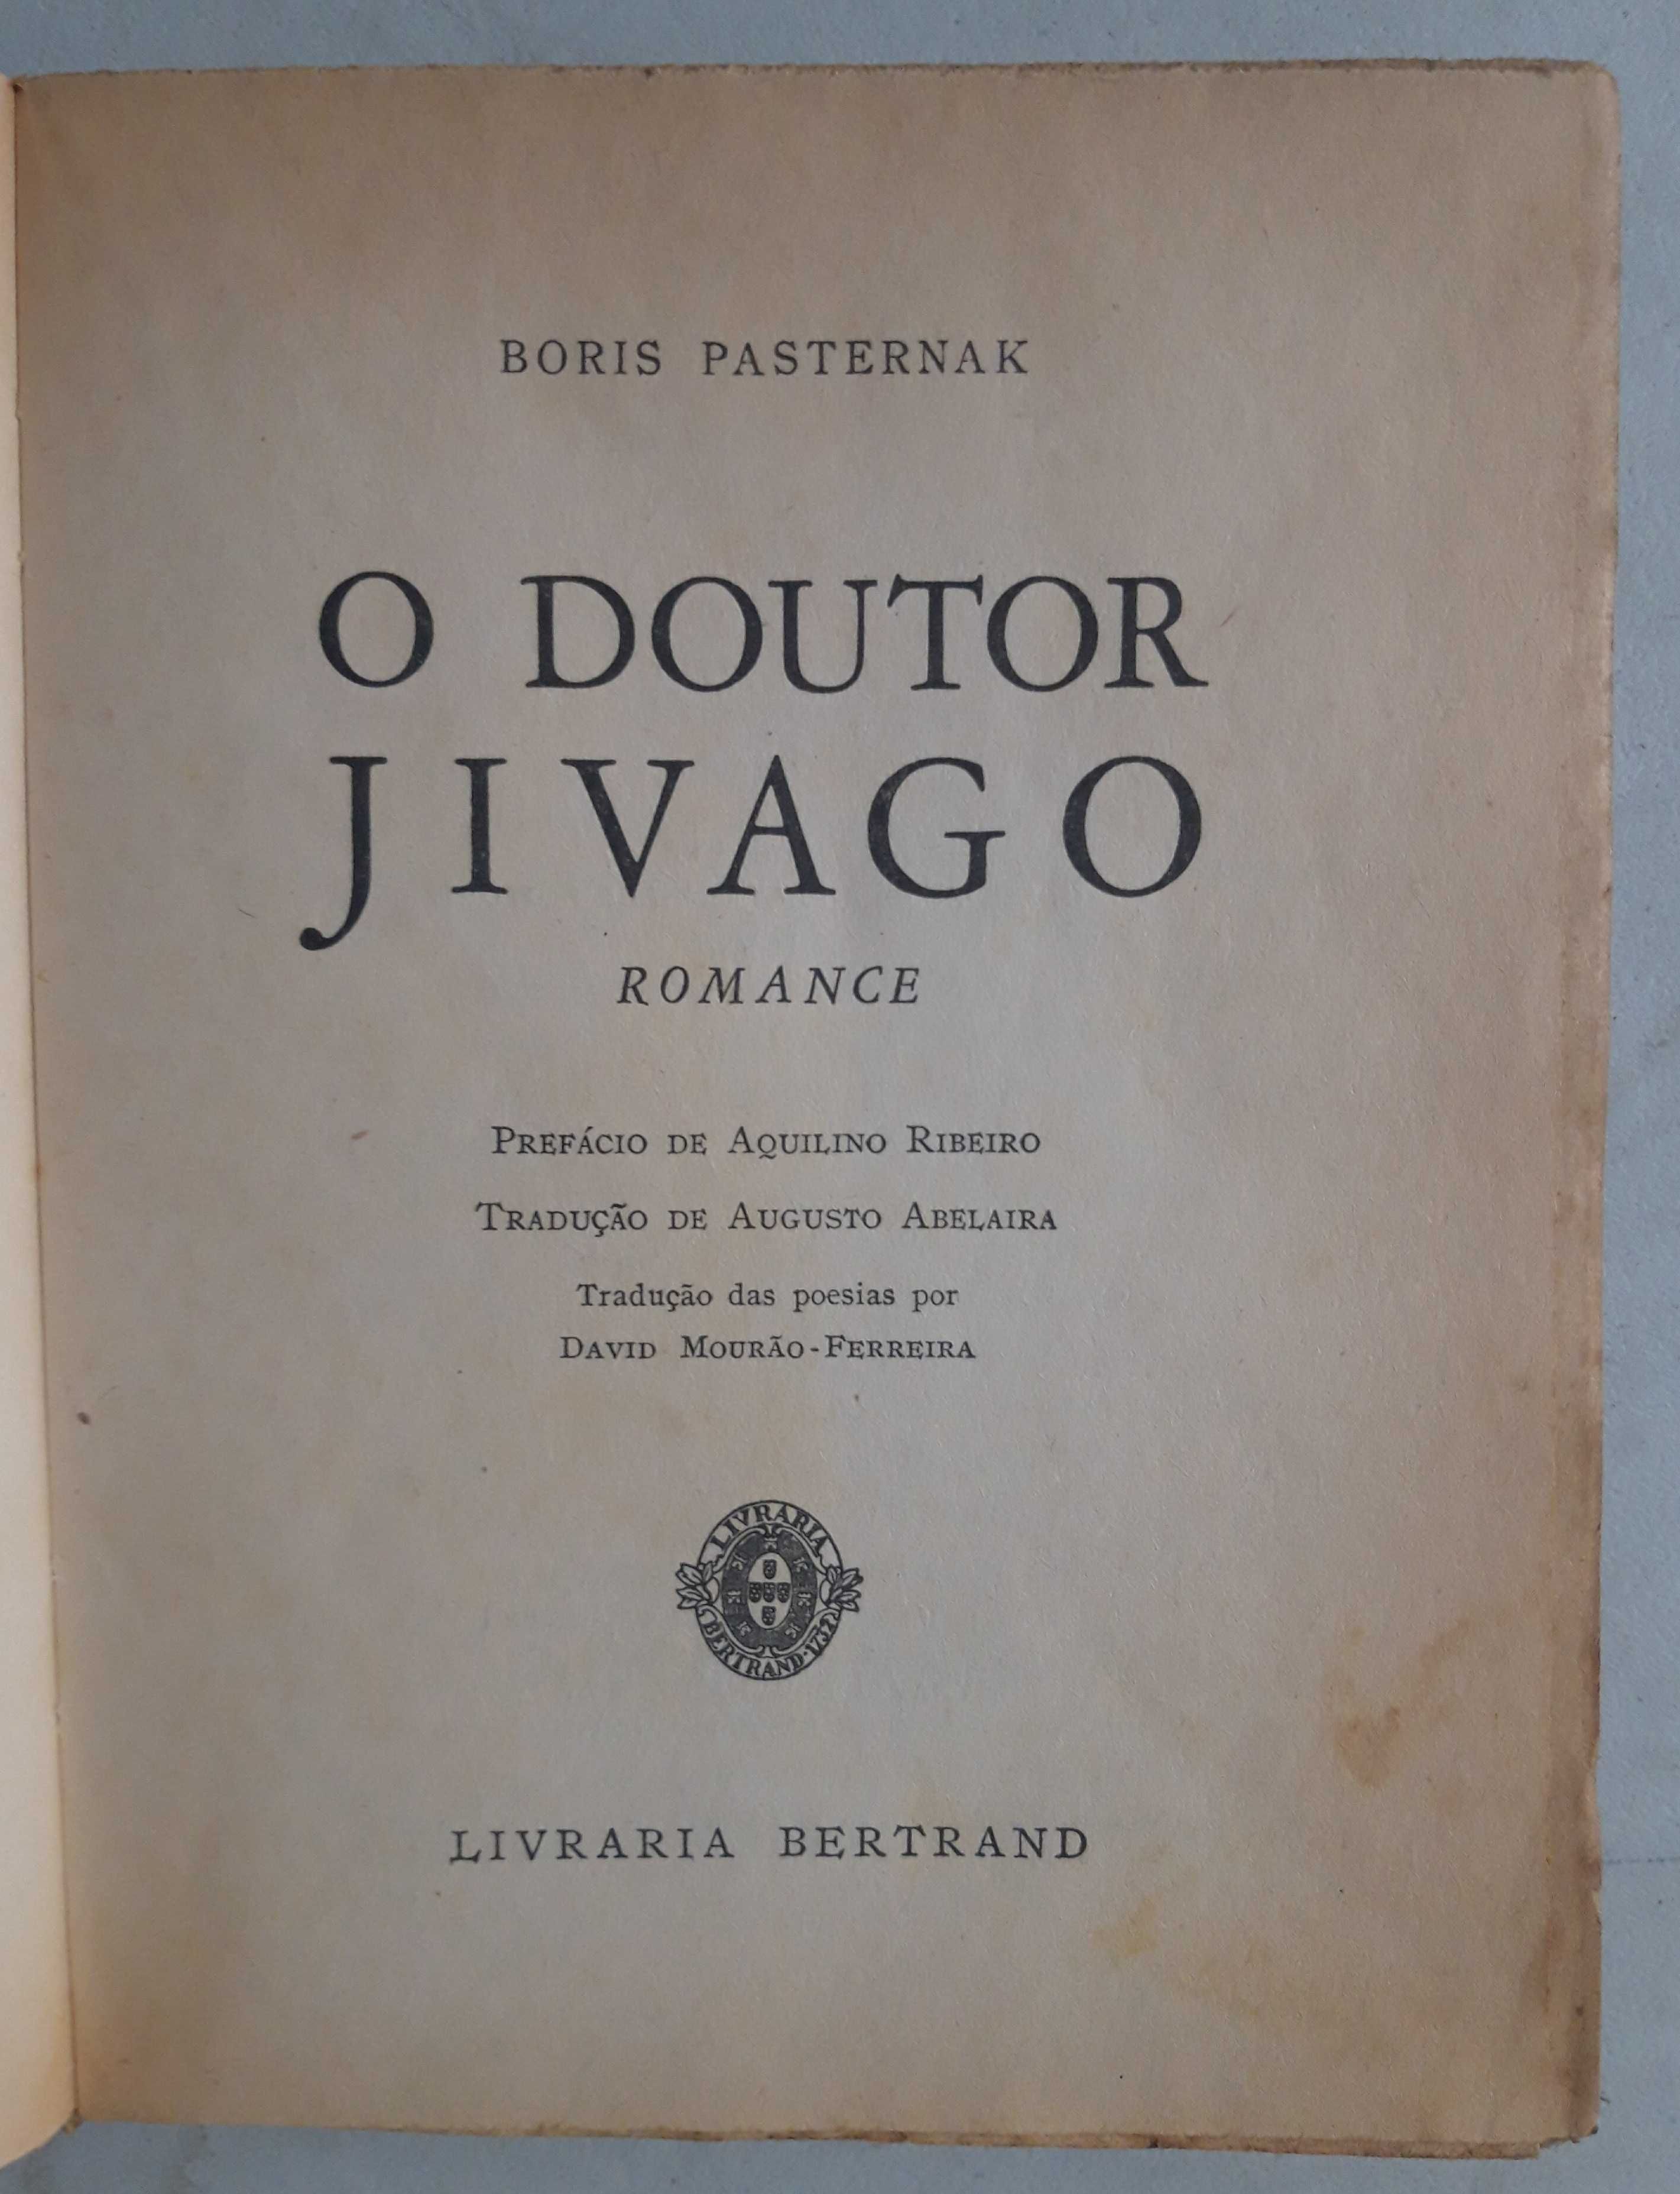 Livro PA-5 - Boris Pasternak - O Doutor Jivago